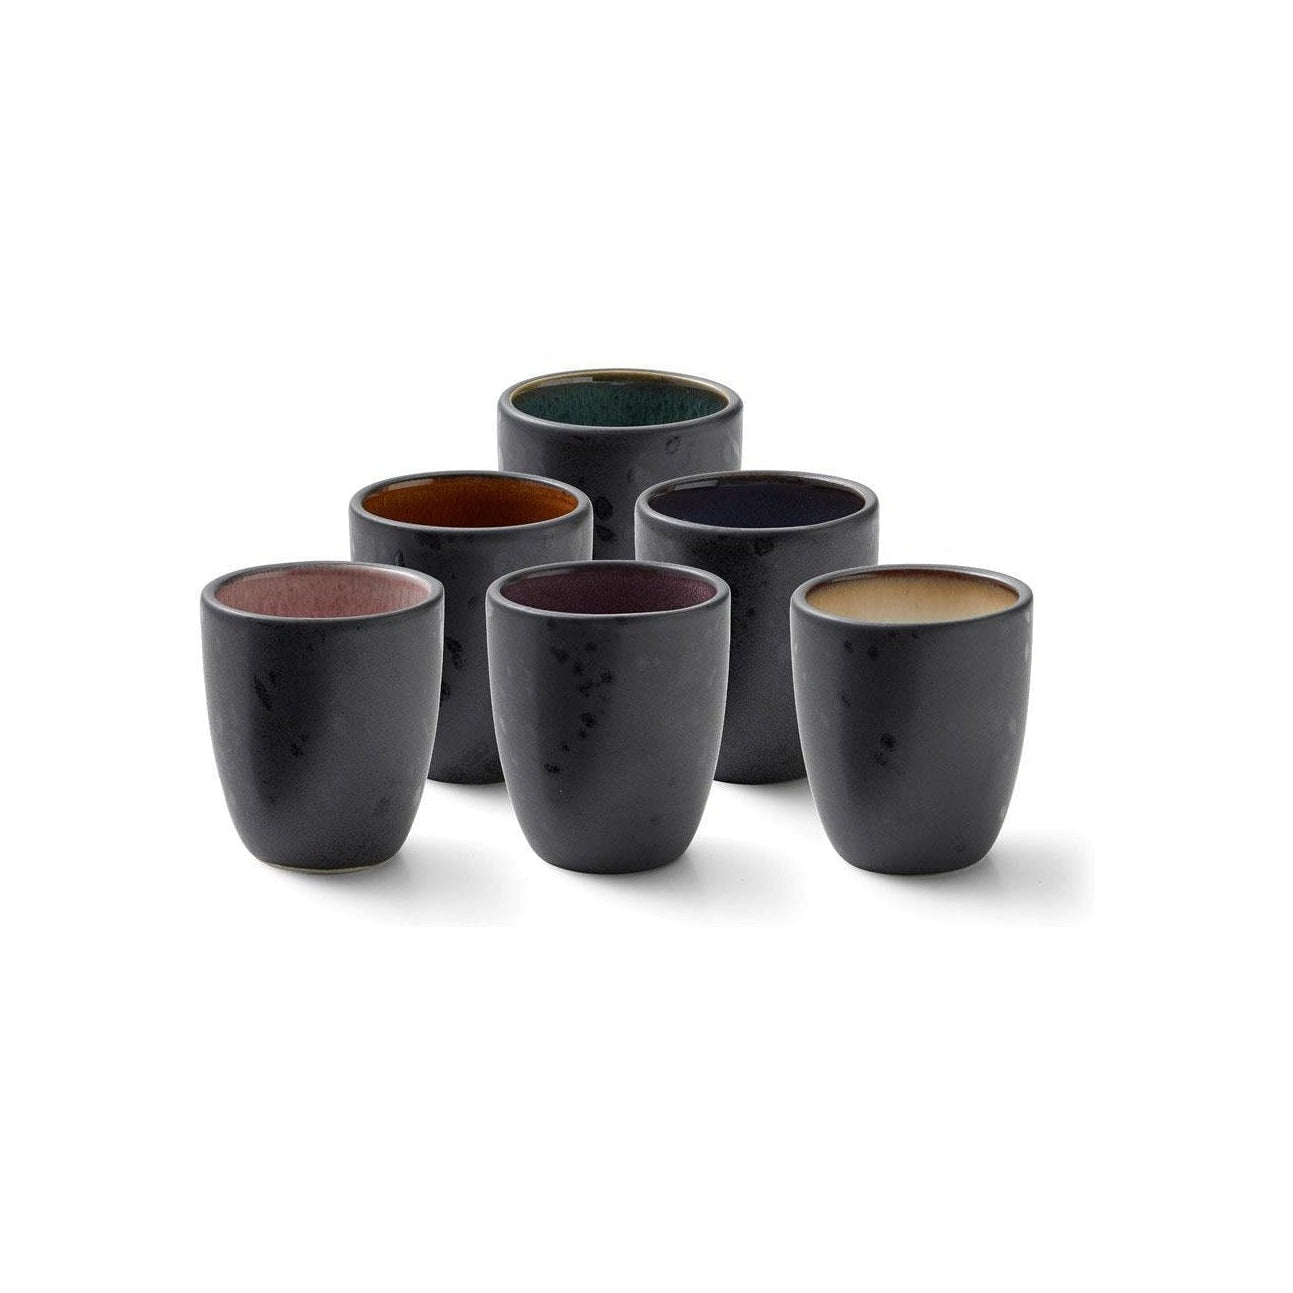 Bitz Espresso-Tassen-Set, verschiedene Farben, 6 Stück.